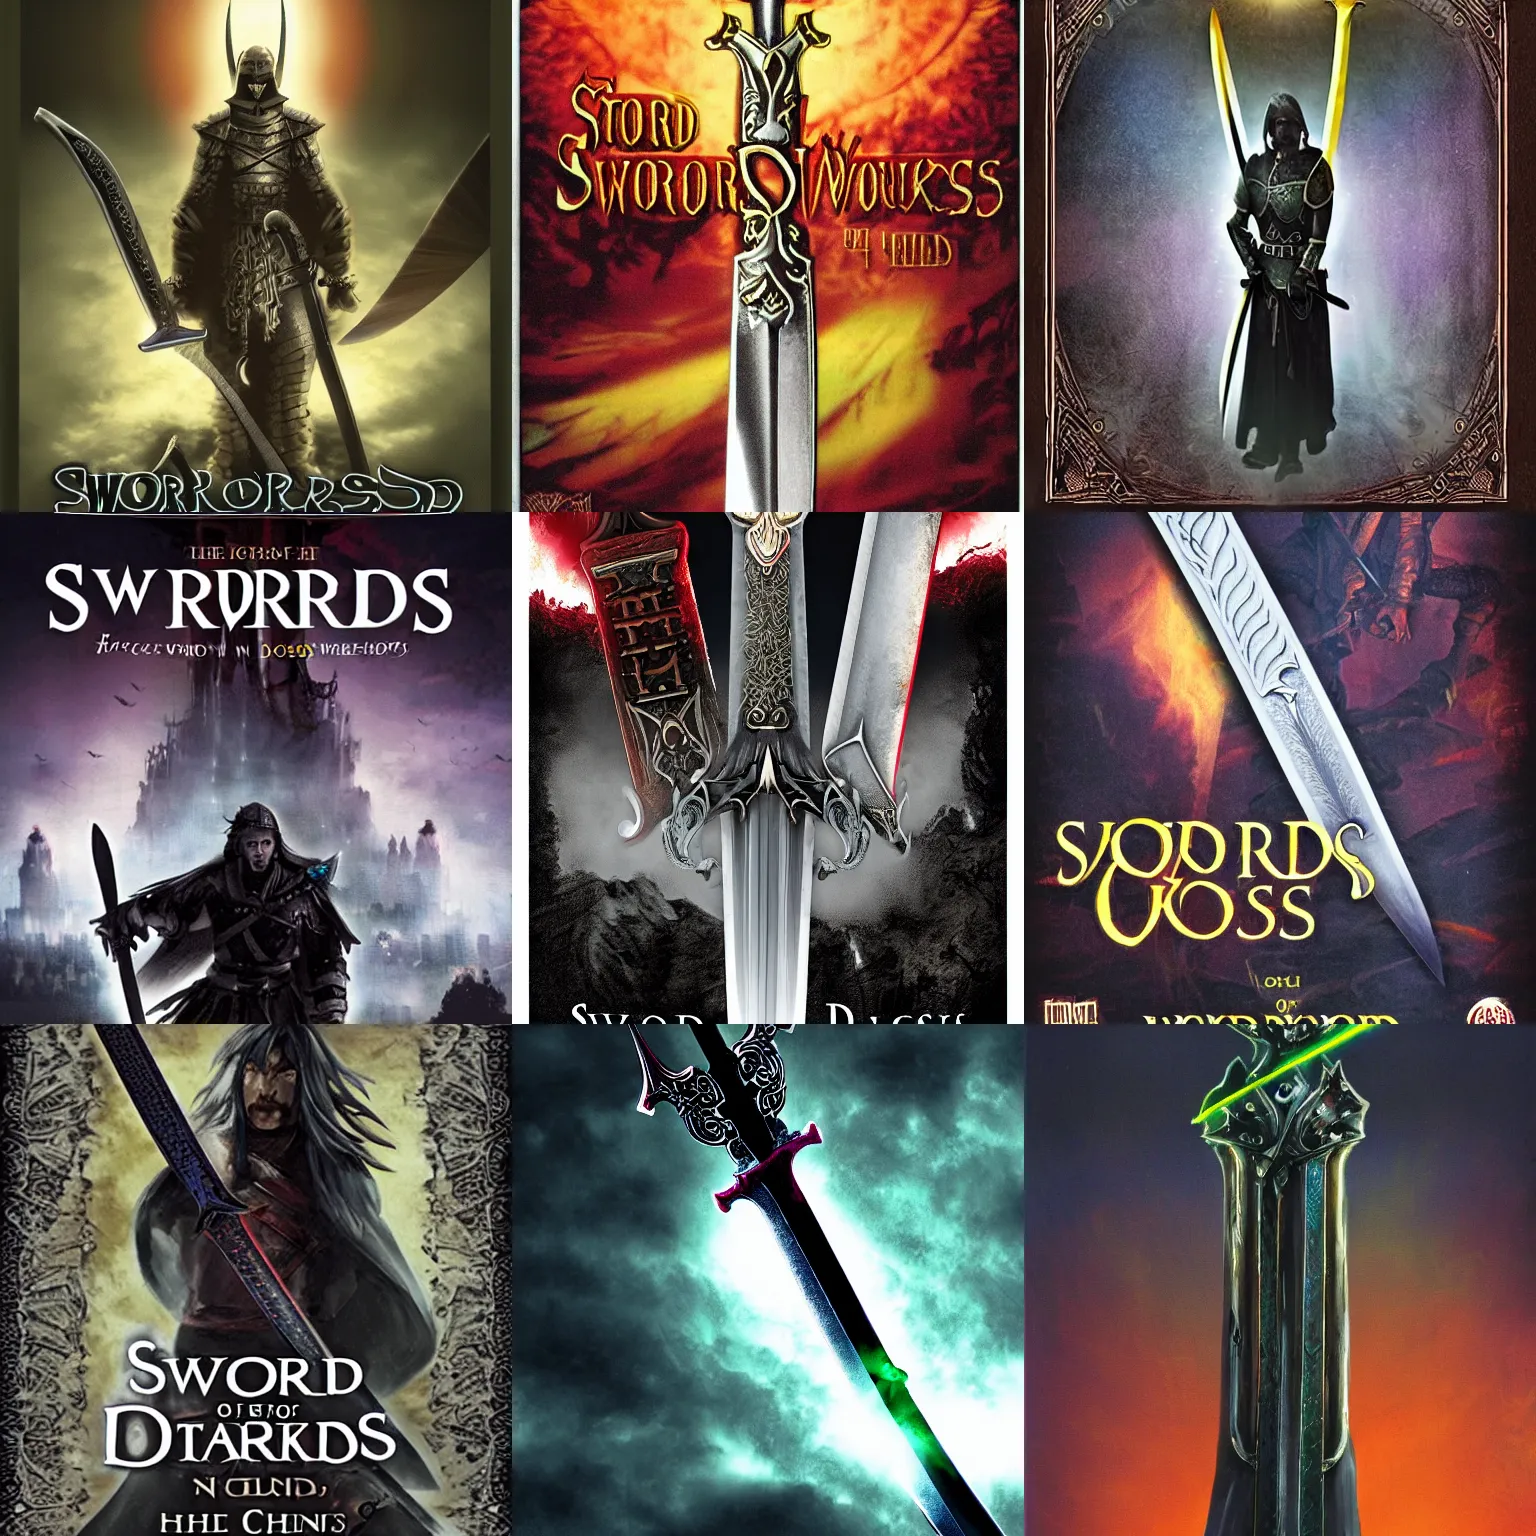 Prompt: sword of darkness